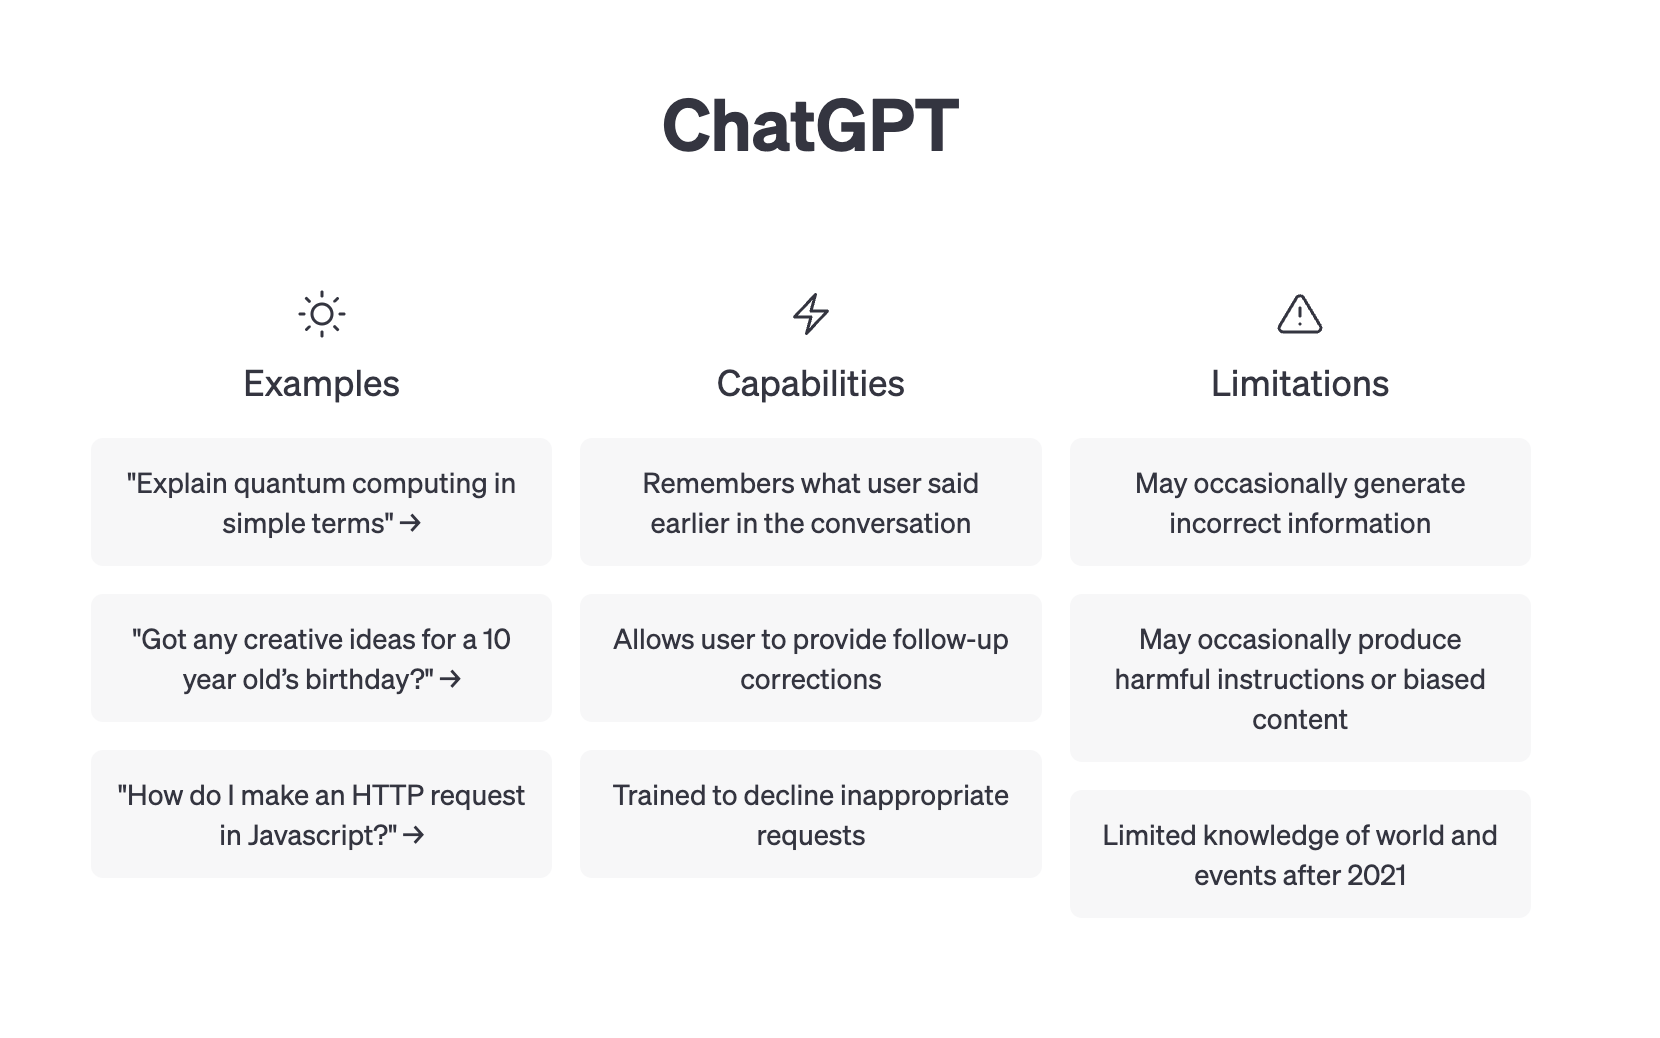 ChatGPT 홈페이지에 제시된 ChatGPT가 할 수 있는 것들과 한계